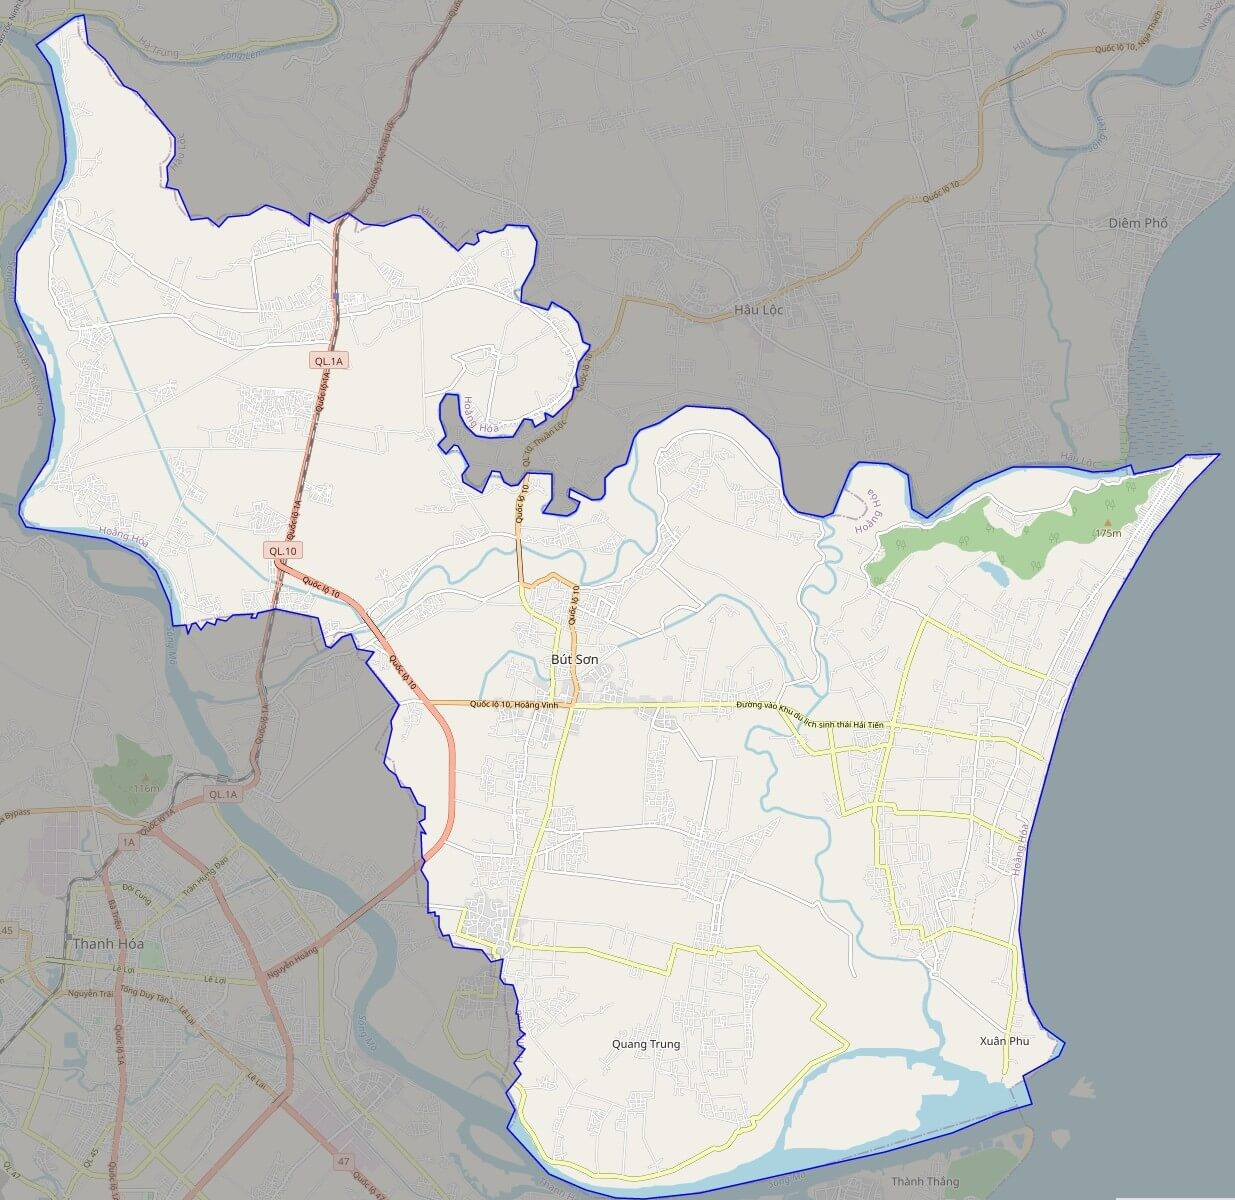 Bản đồ hành chính huyện Hoằng Hóa